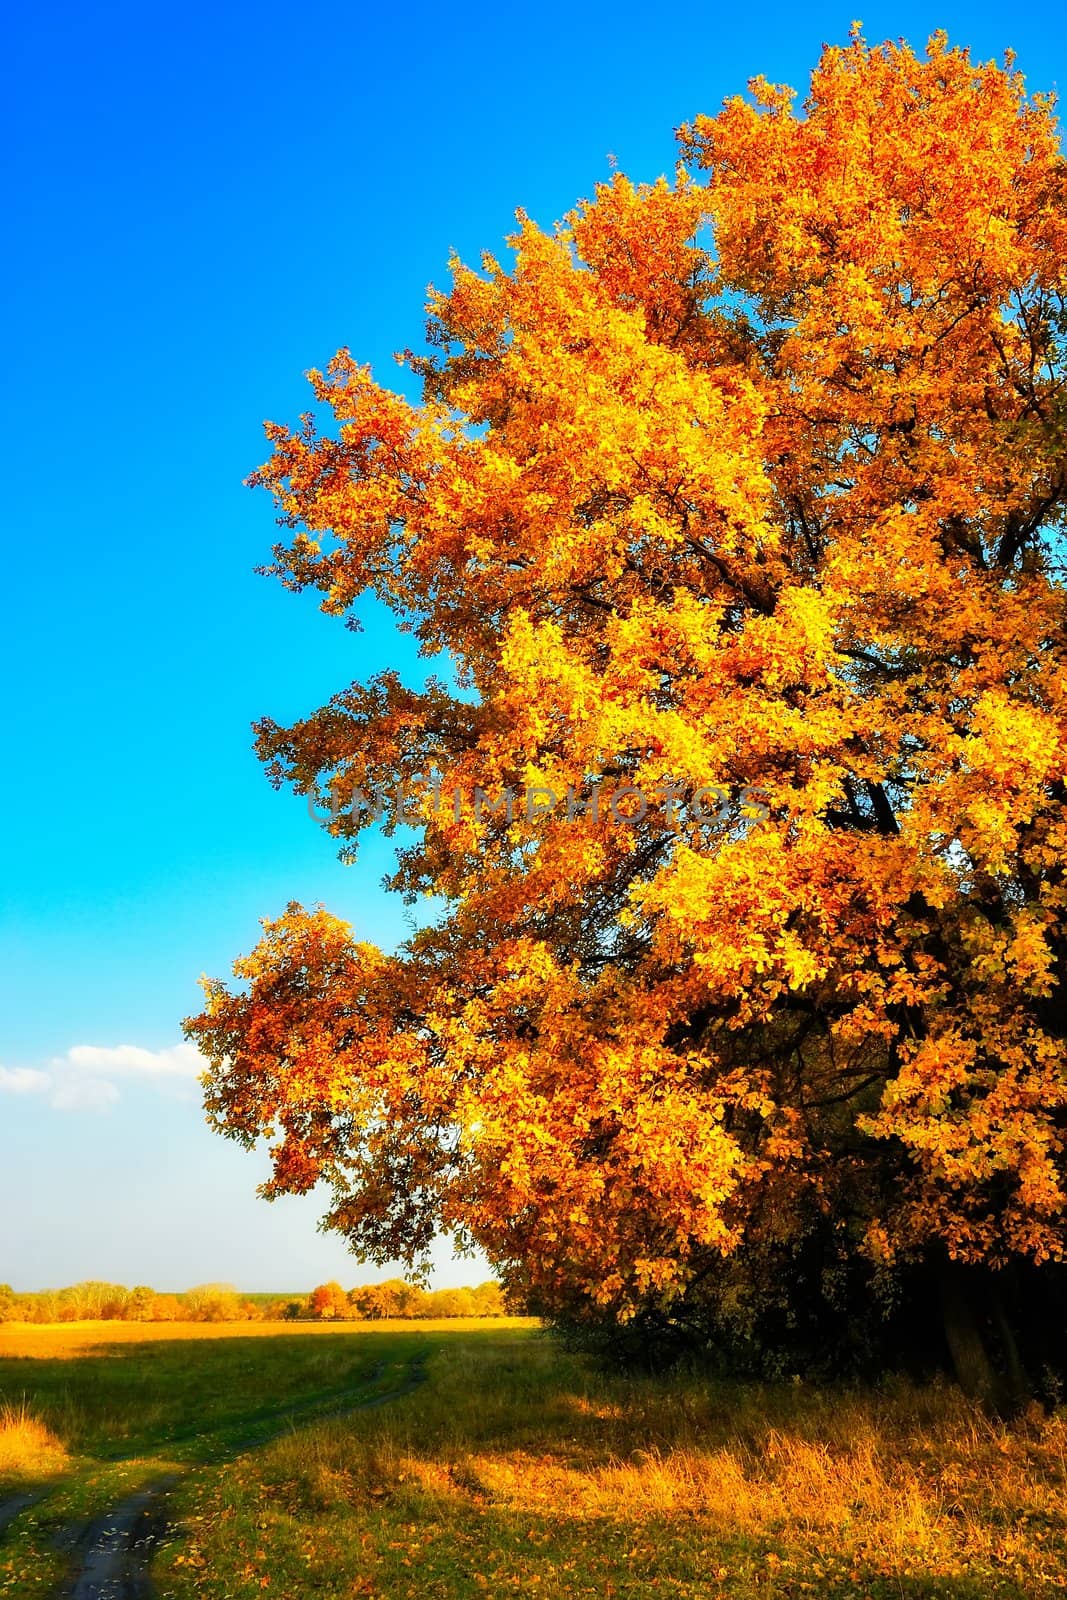 Single autumn oak under a blue sky